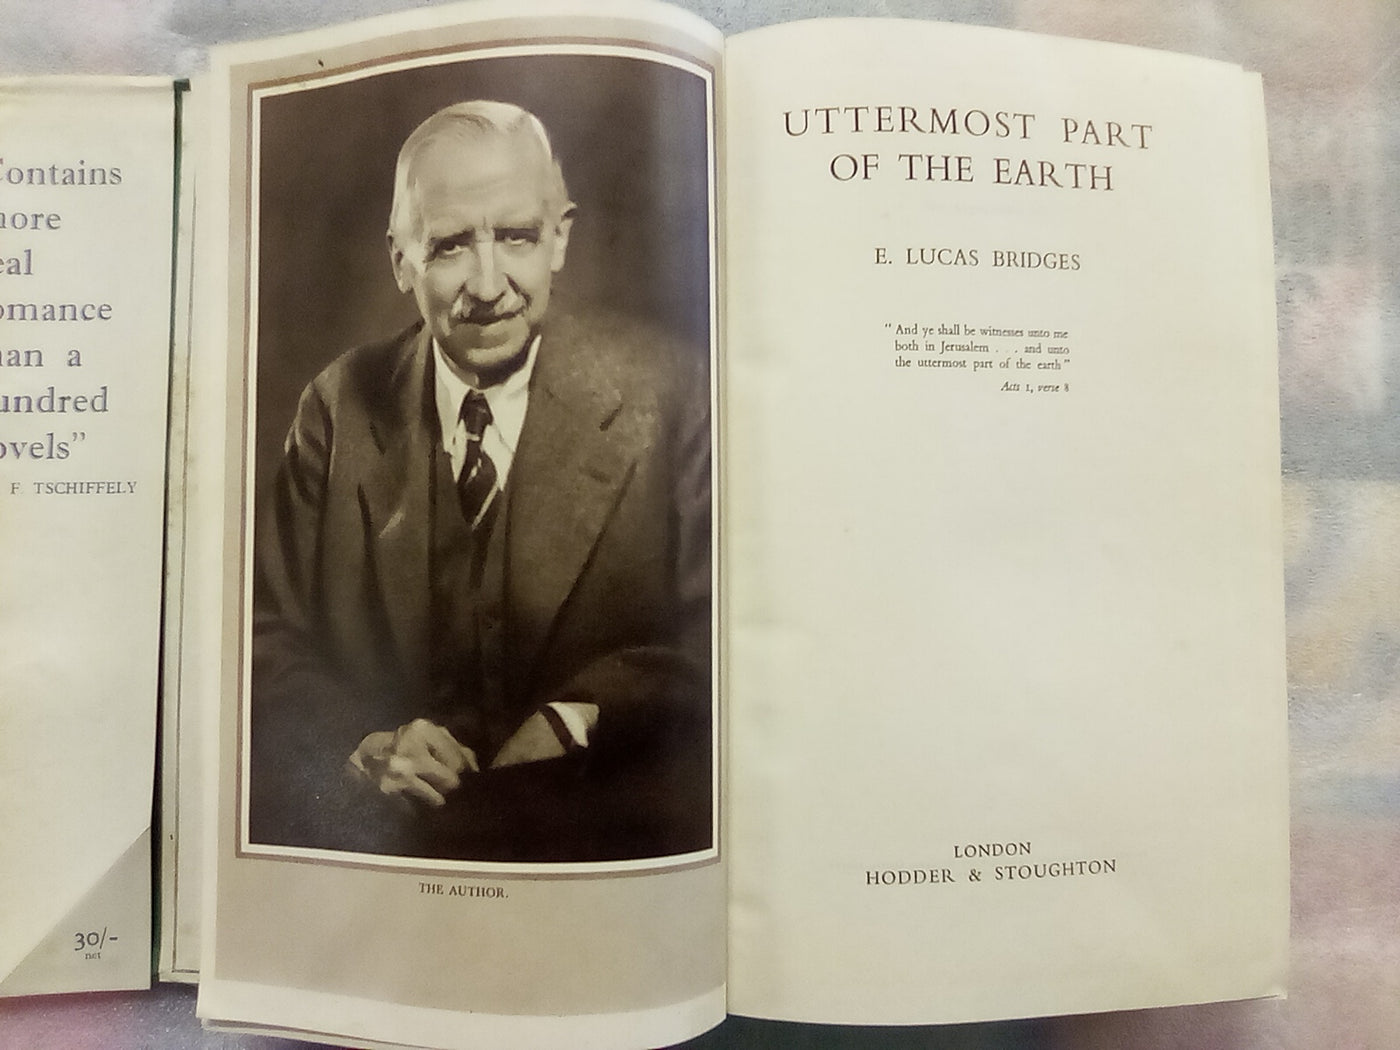 Uttermost Part of the Earth by E. Lucas Bridges